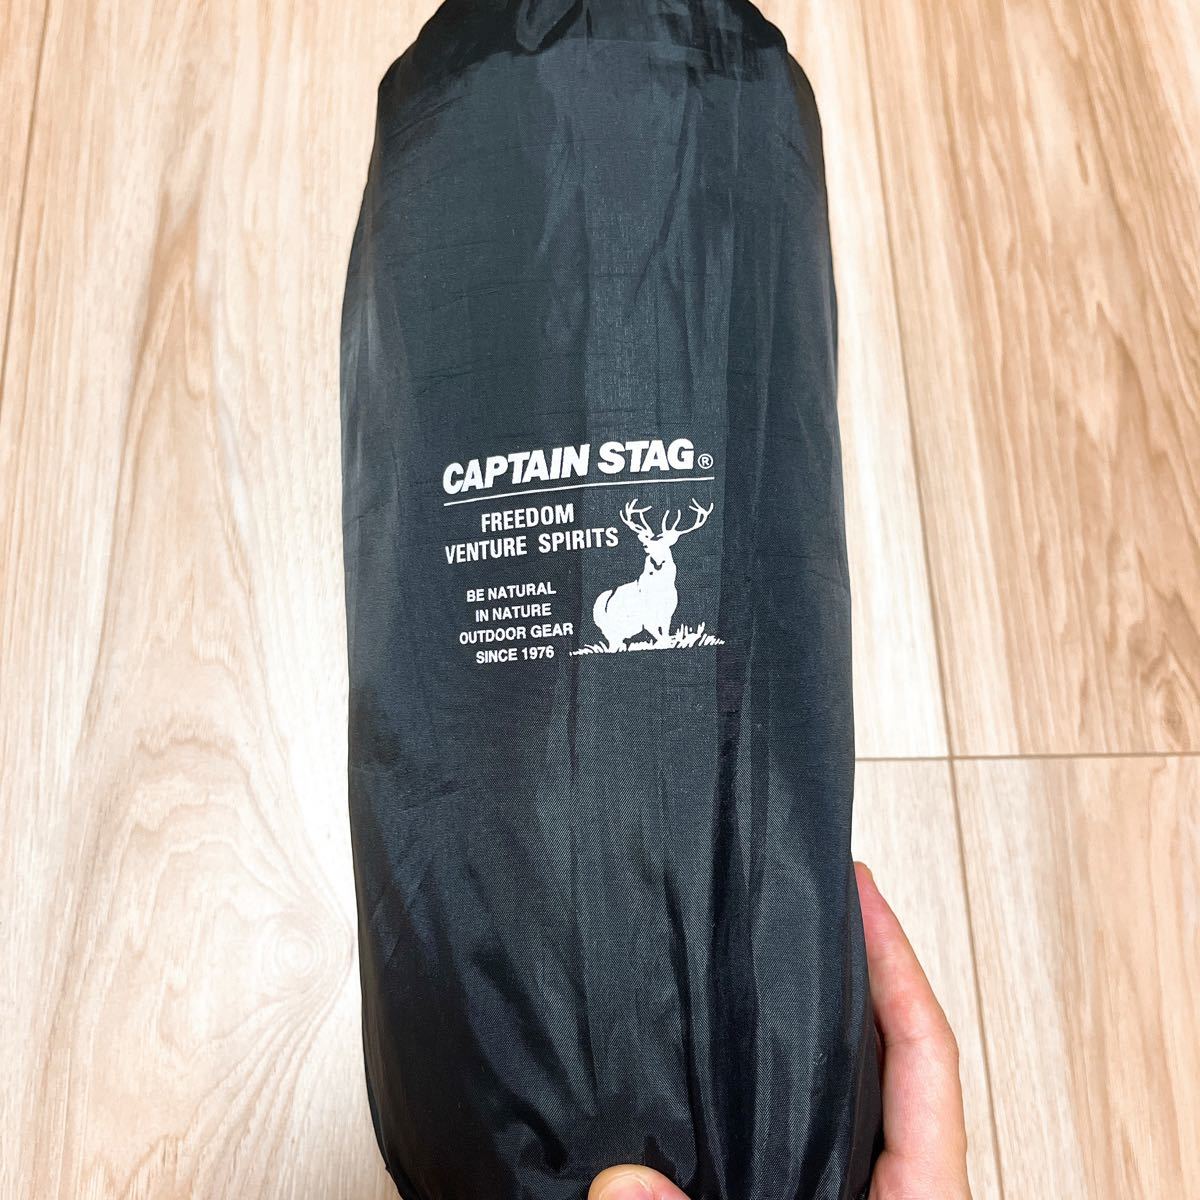 キャプテンスタッグ CAPTAIN STAG キャンプ用品 枕 エアーピロー 携帯枕 インフレータブル インフレーティングピロー